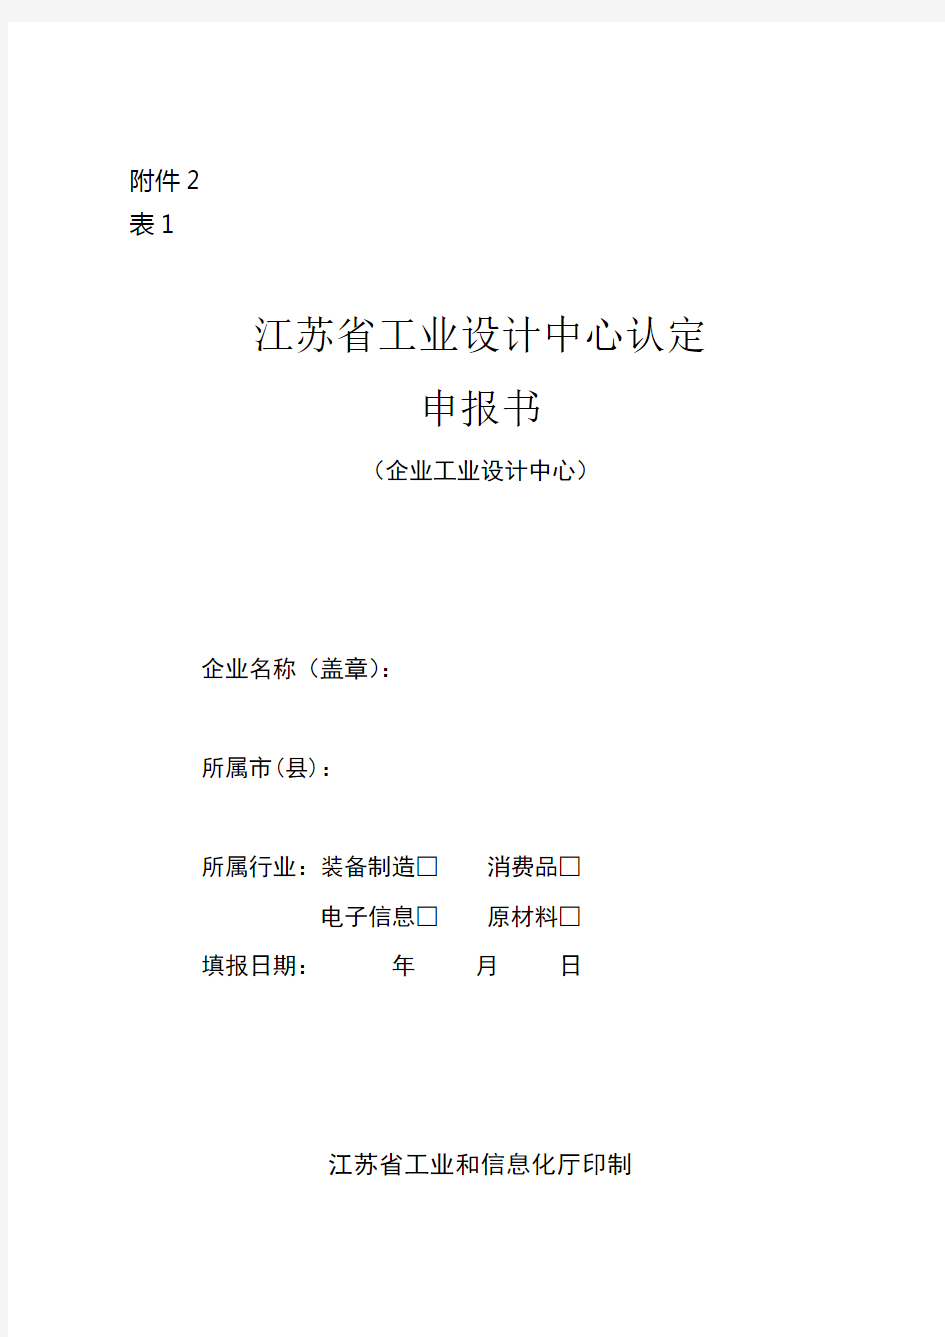 江苏省工业设计中心、工业设计示范园申报书